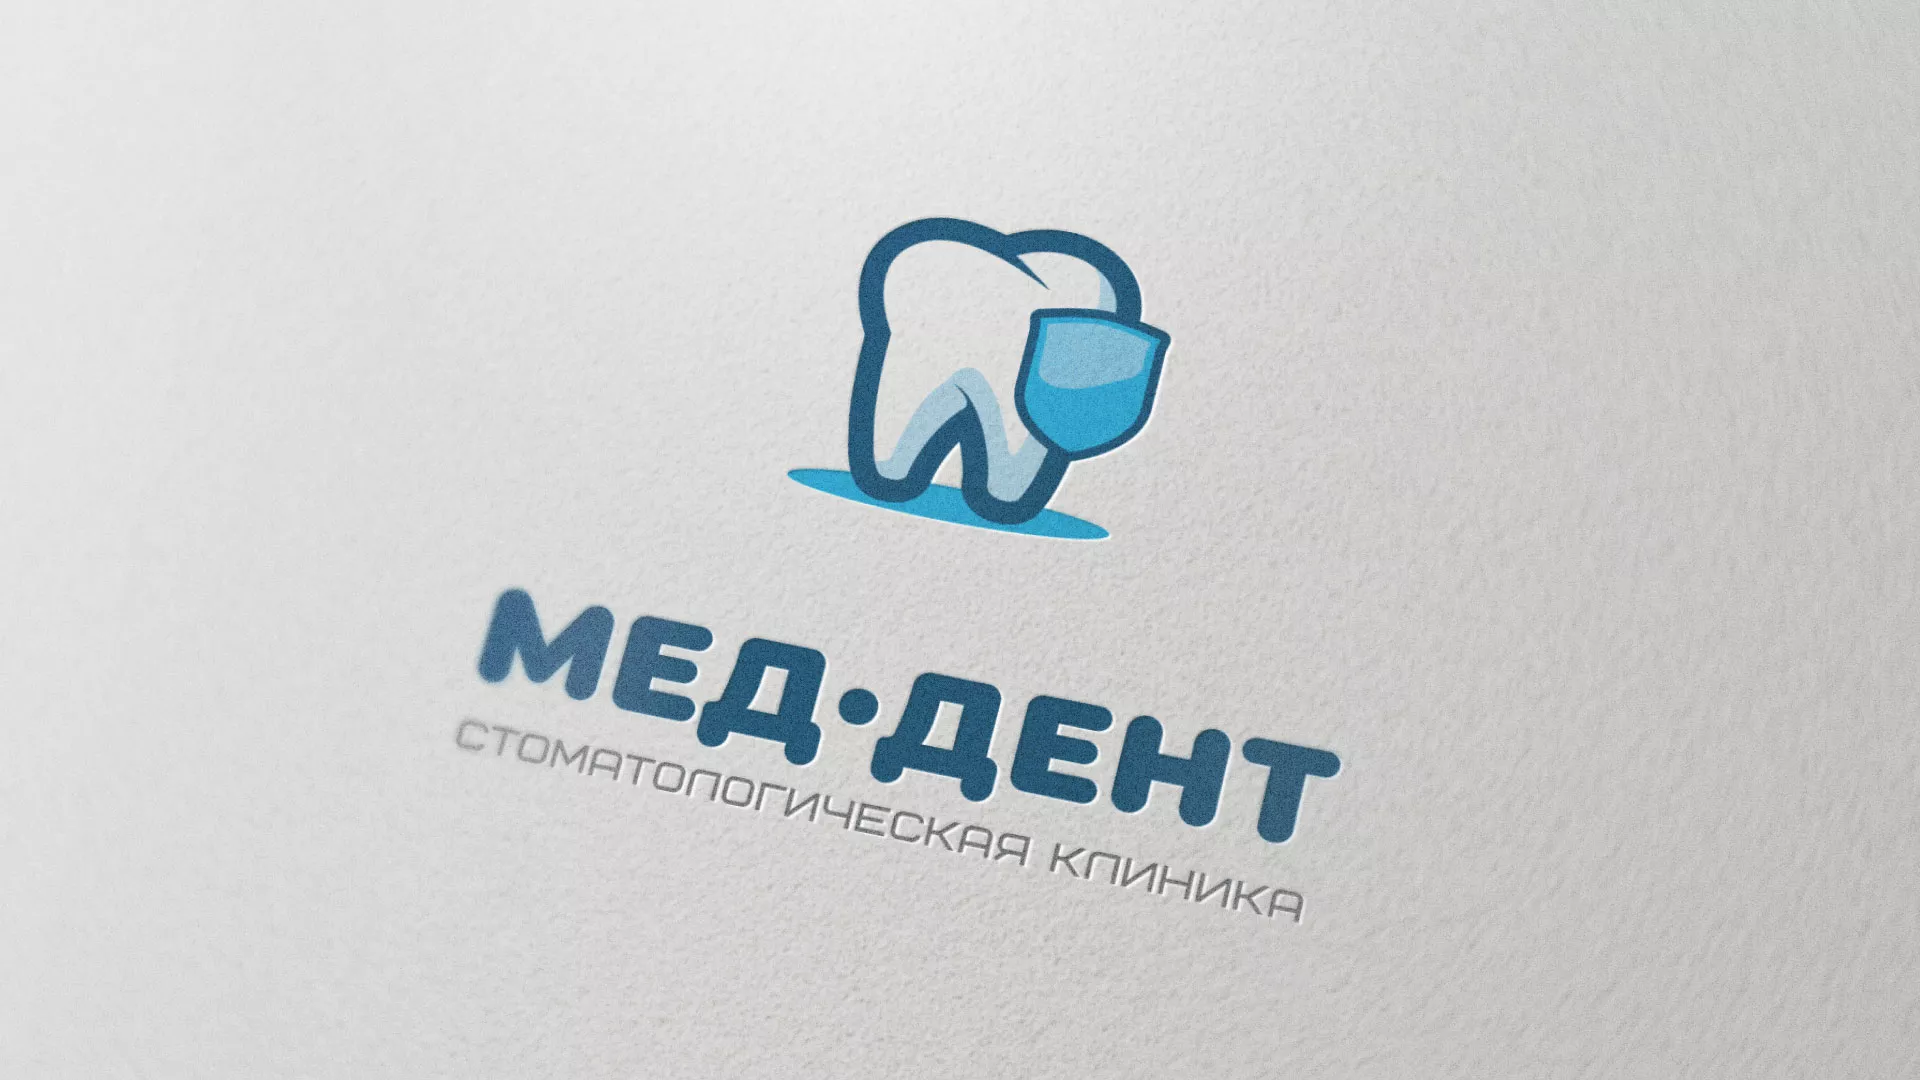 Разработка логотипа стоматологической клиники «МЕД-ДЕНТ» в Мариинске